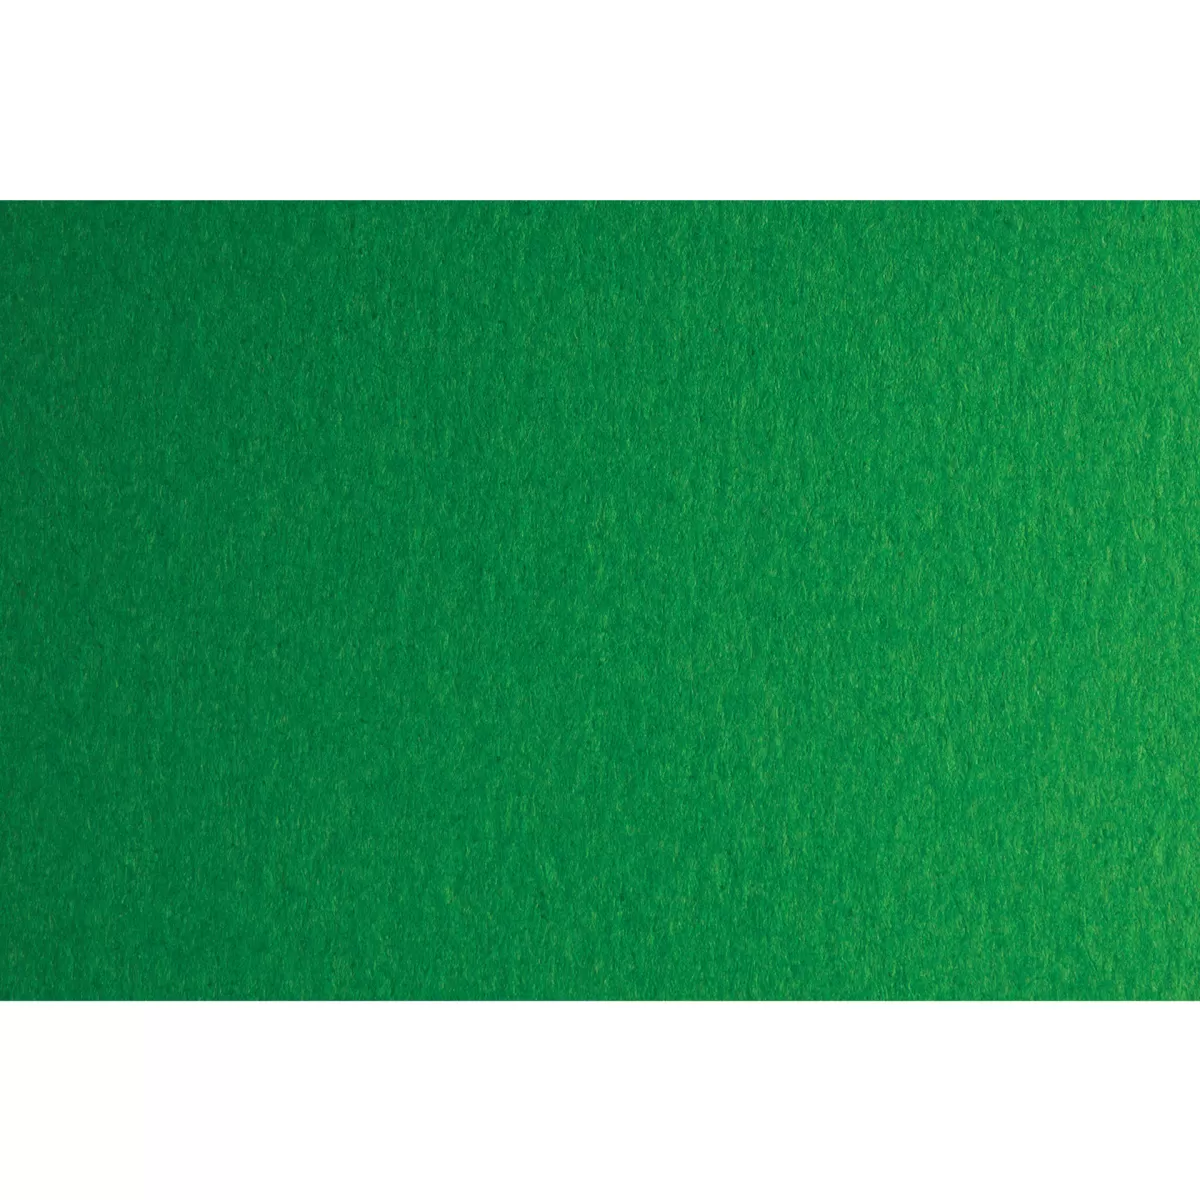 Fabriano Картон Colore, 70 x 100 cm, 140 g/m2, № 231, зелен